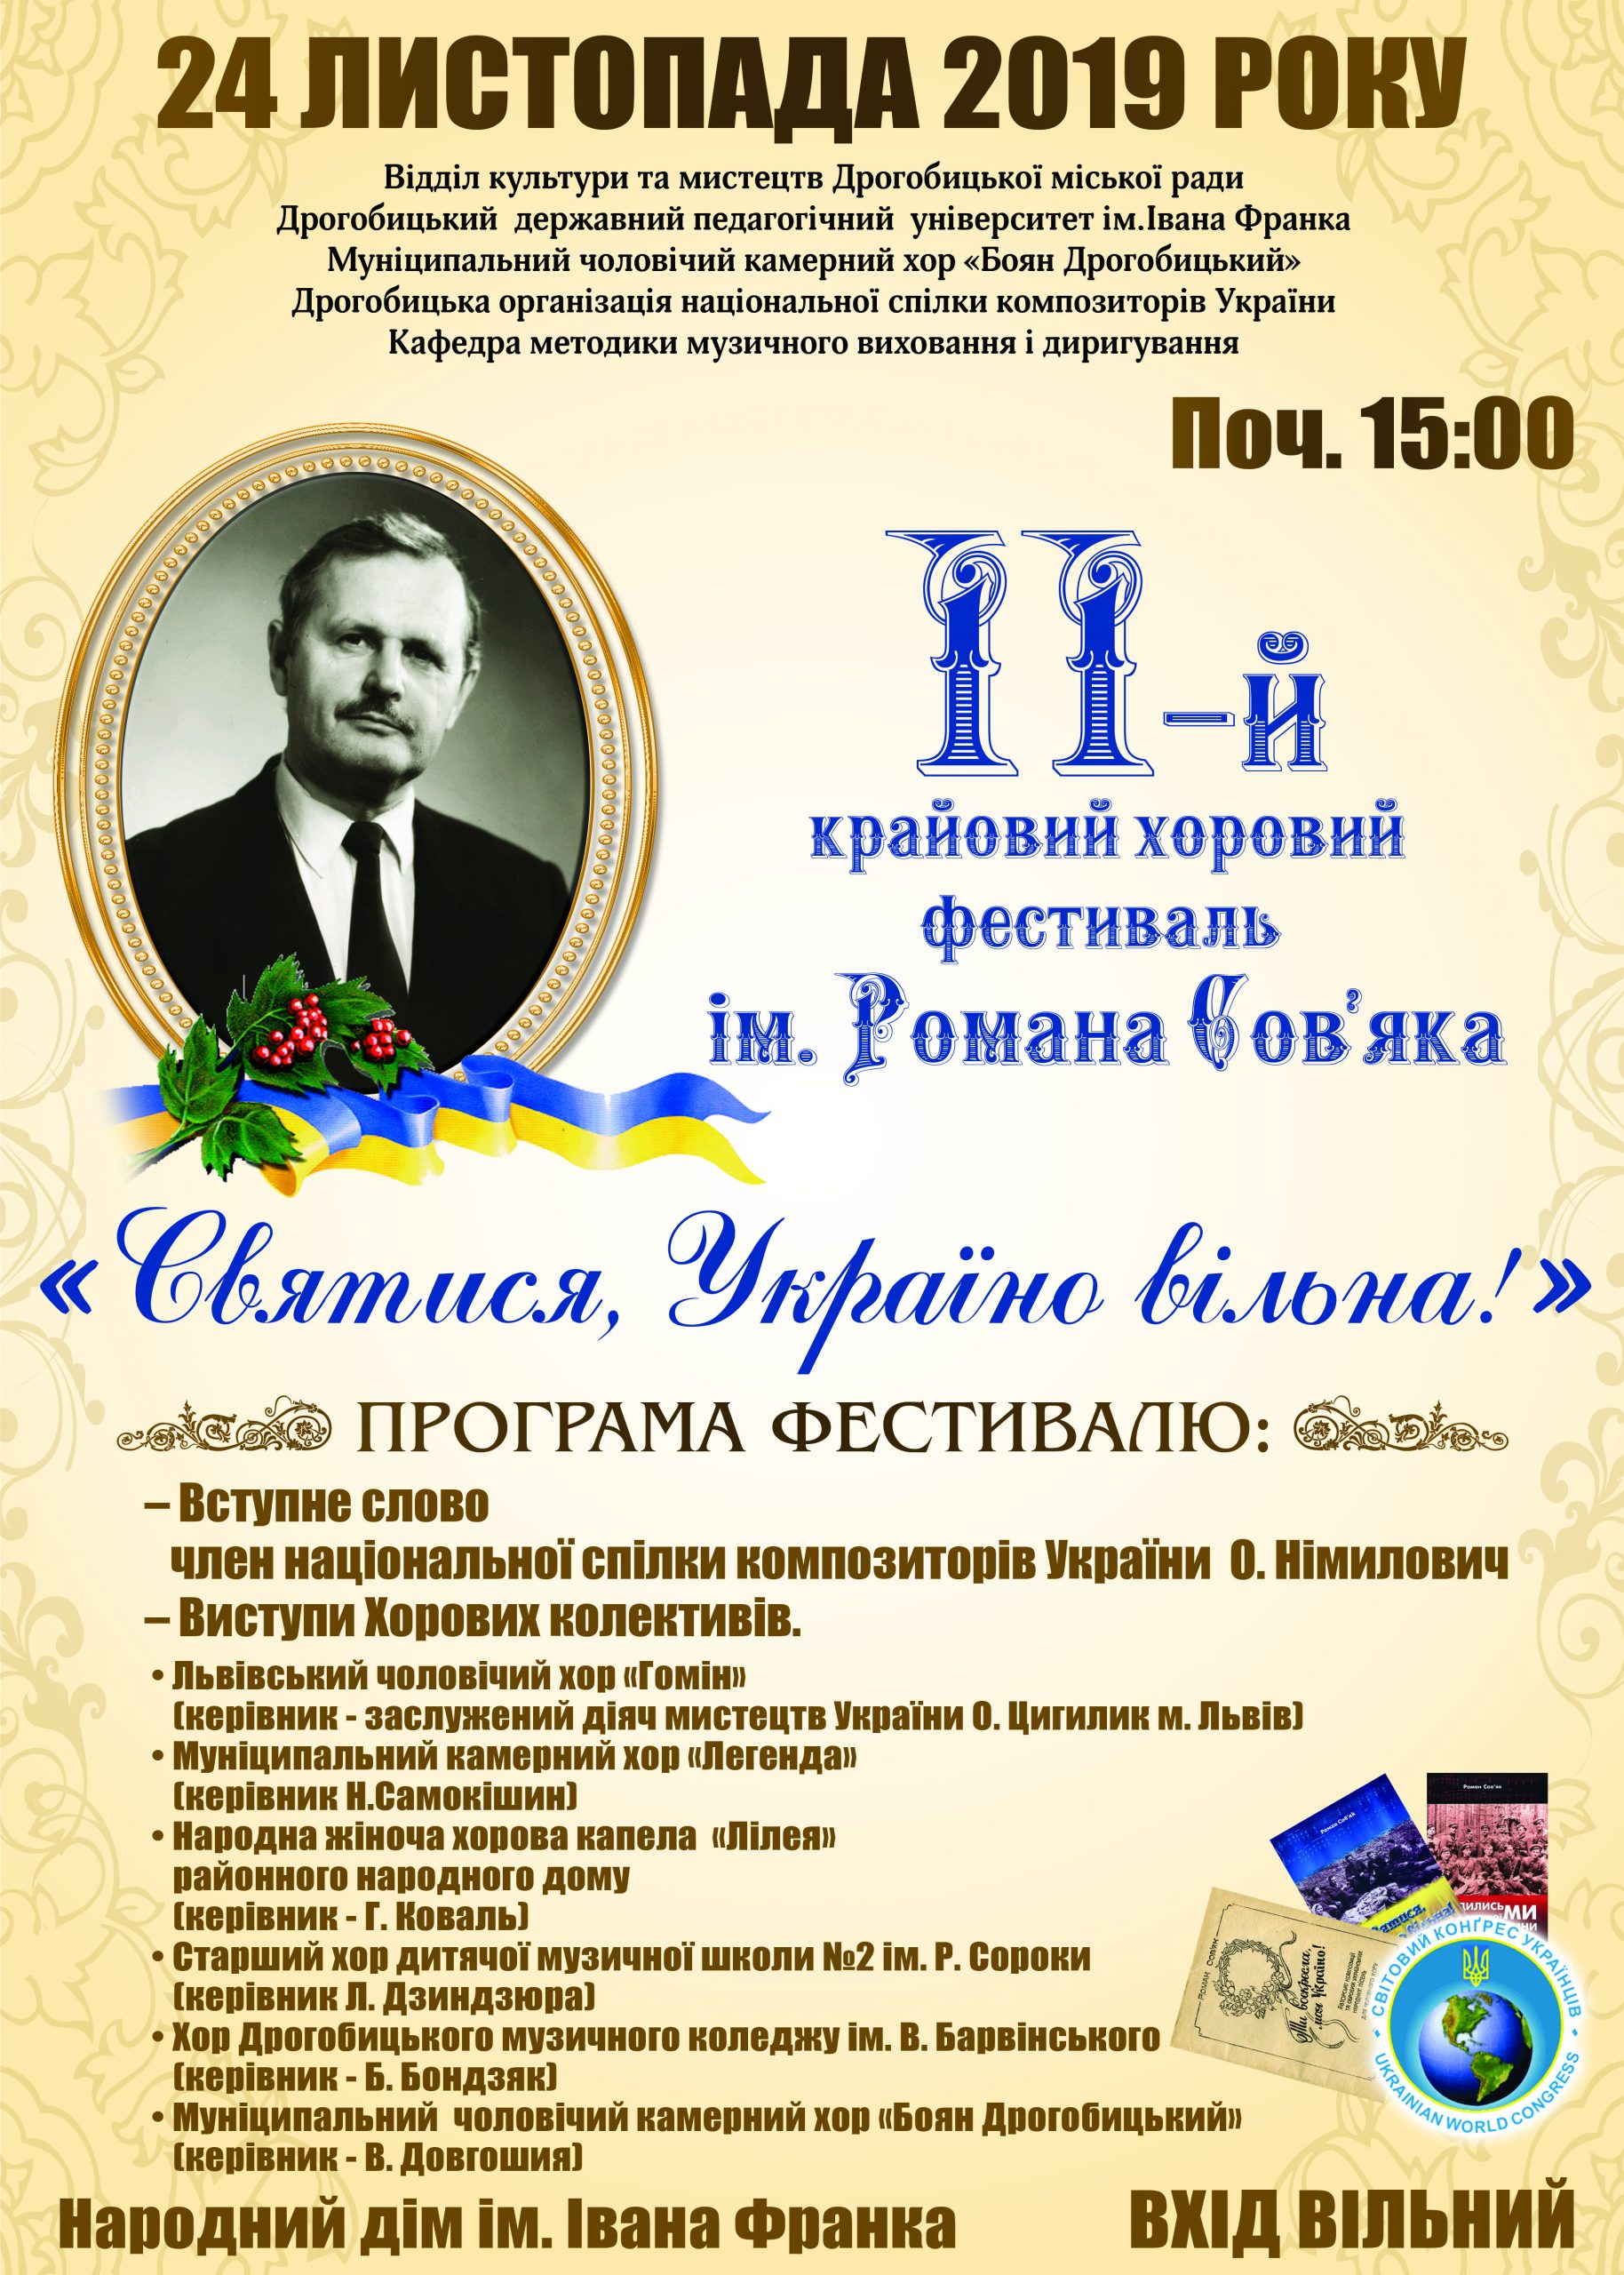 24 листопада у Дрогобичі відбудеться ІІ крайовий хоровий фестиваль ім. Романа Сов`яка